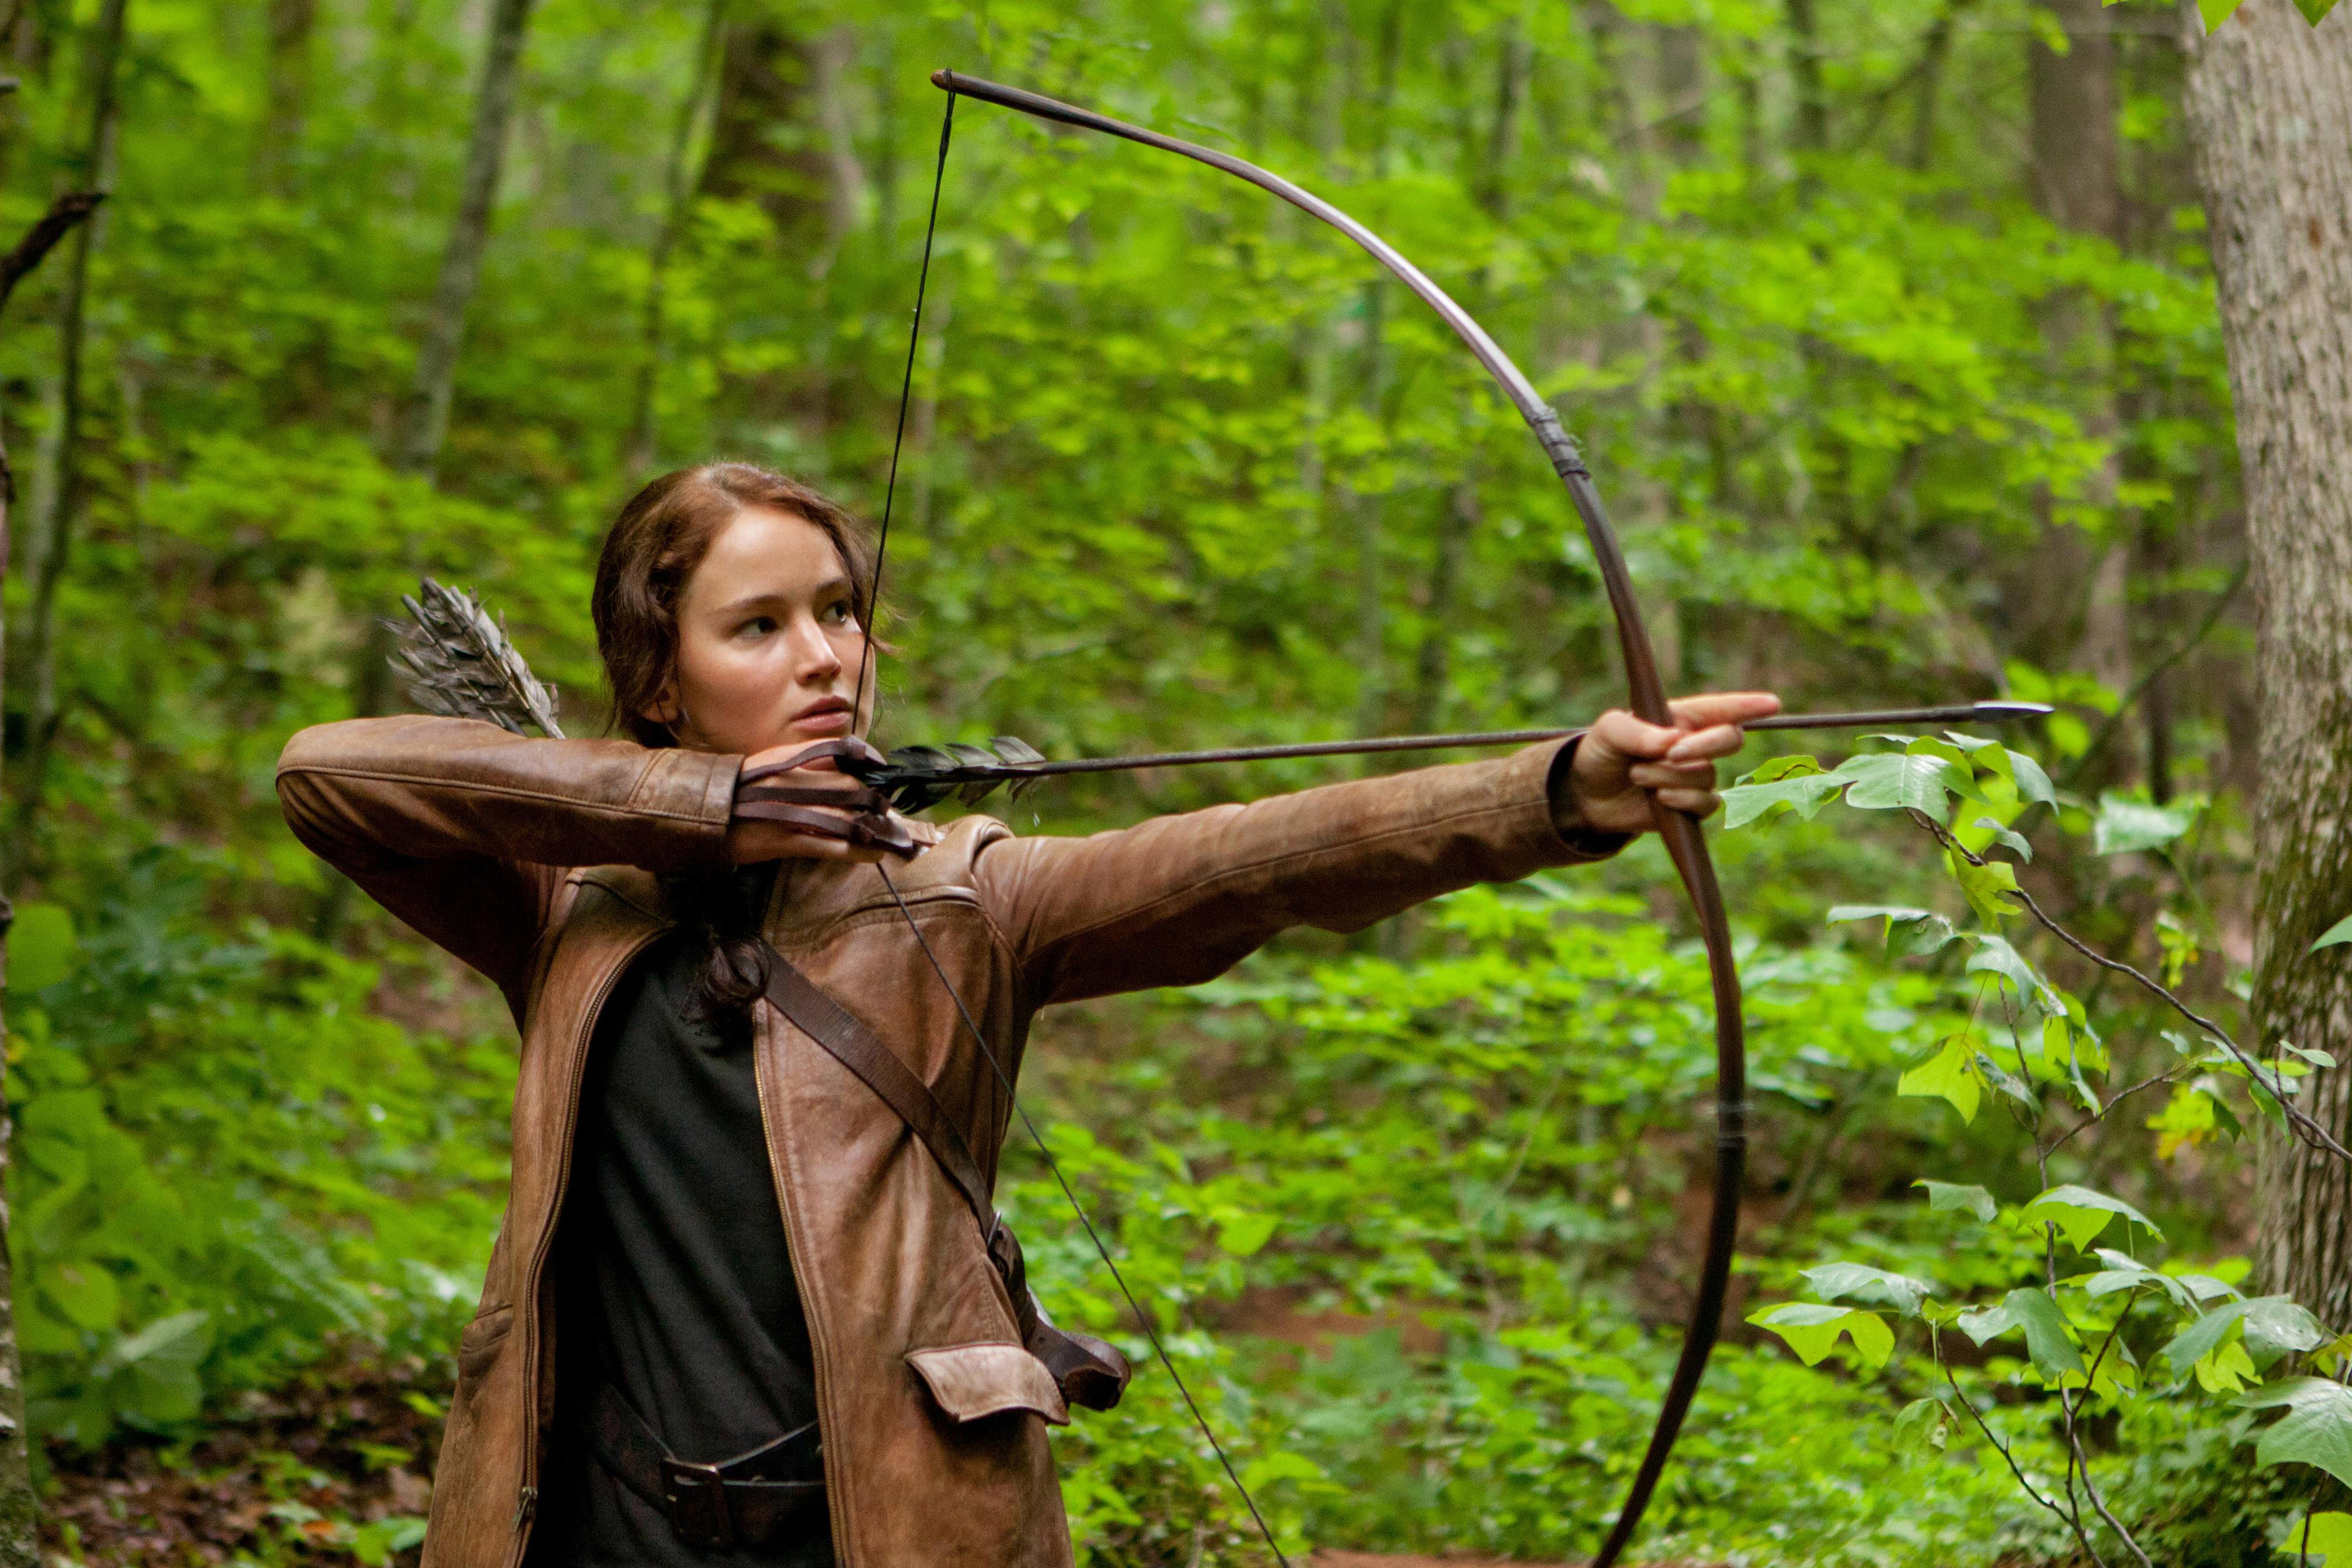 Katniss firing an arrow in the woods